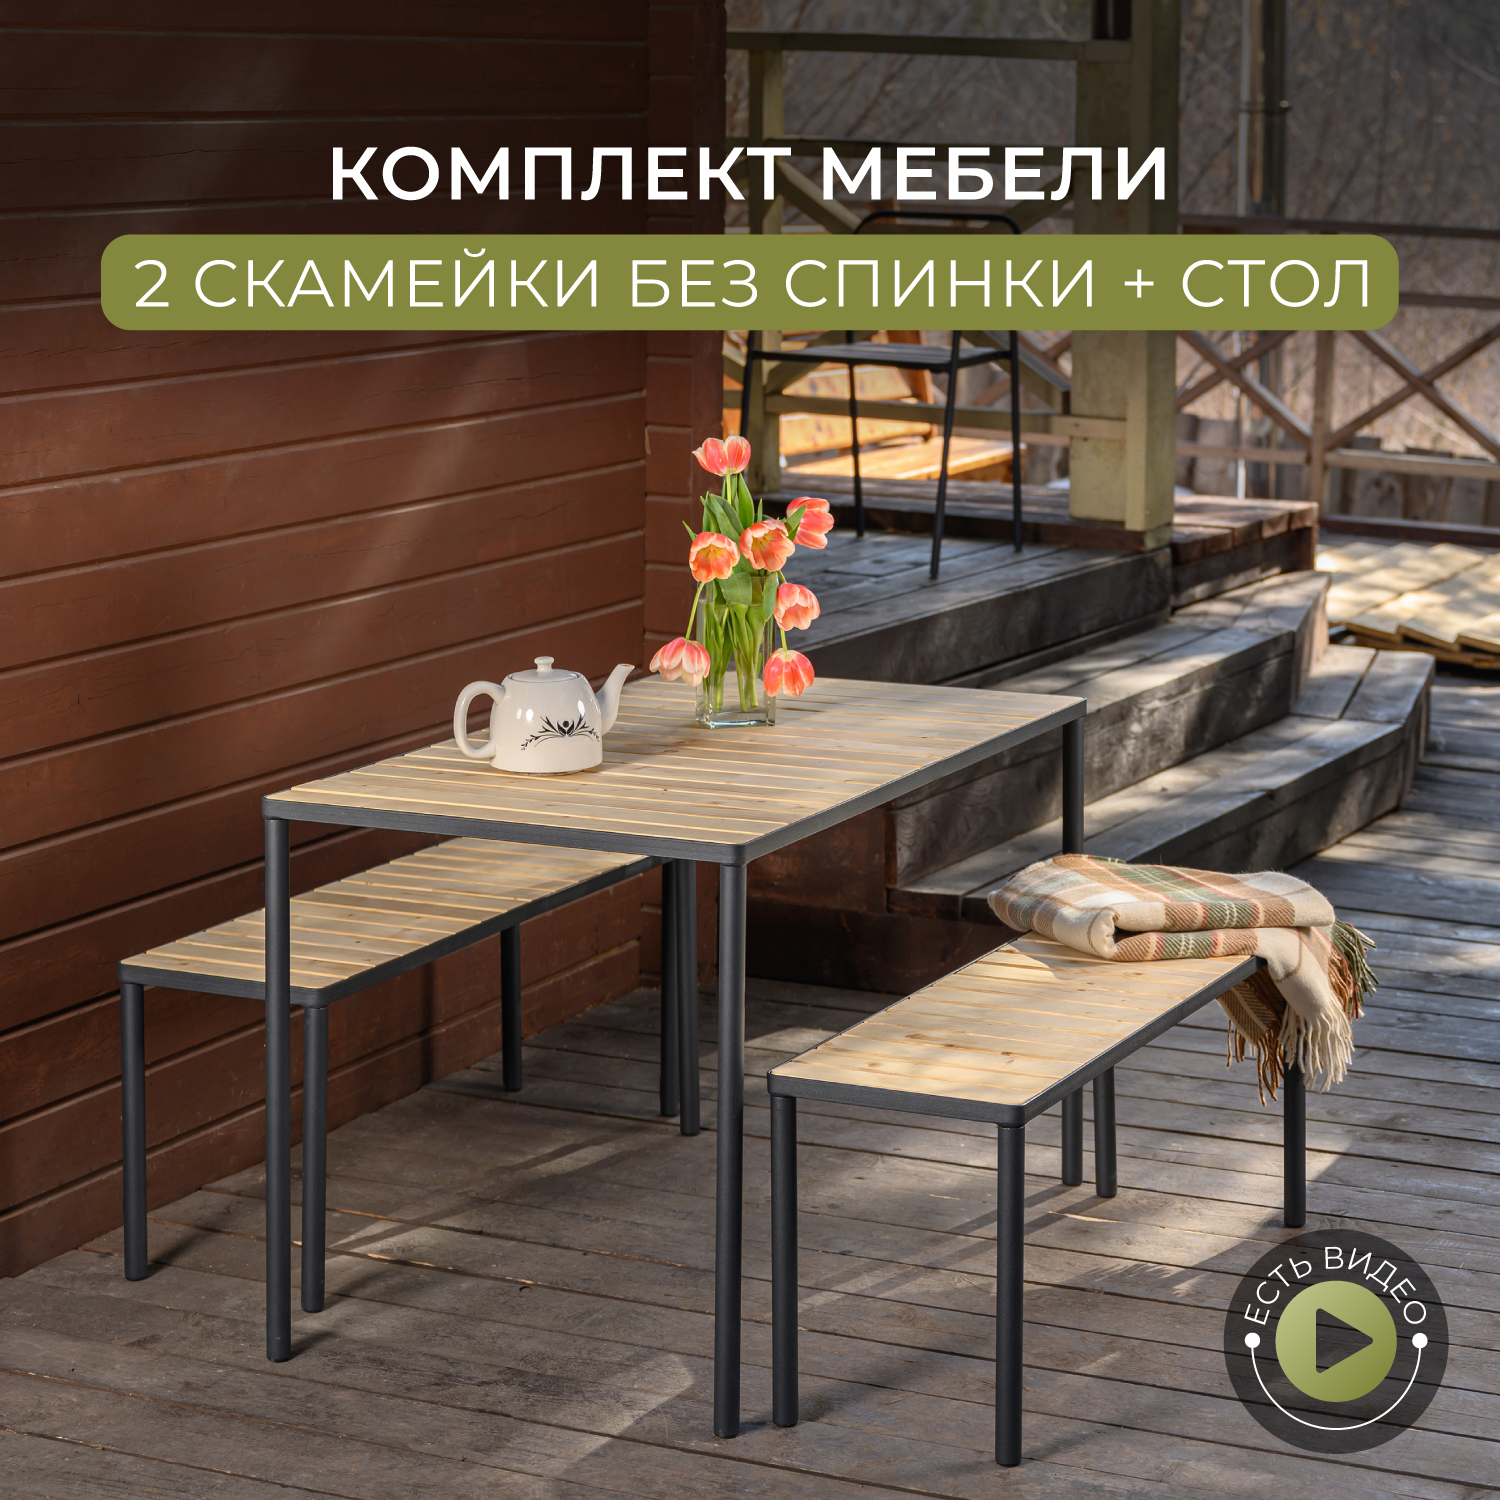 Мебель для дачи набор: стол и скамейка 2 шт. Romack Garden House, арт. 5000_RICH_2